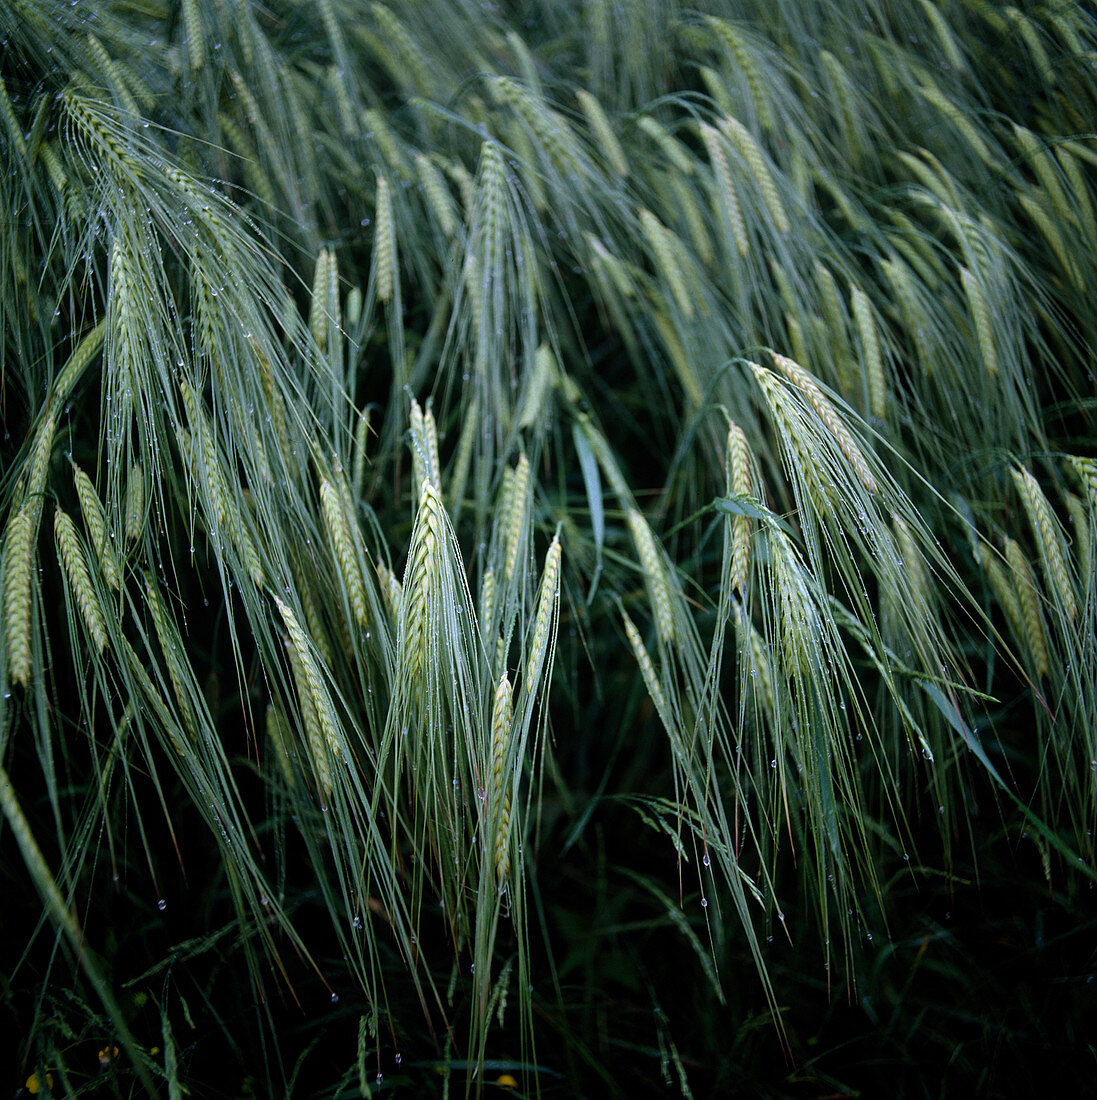 Barley field: Barley (Hordeum)